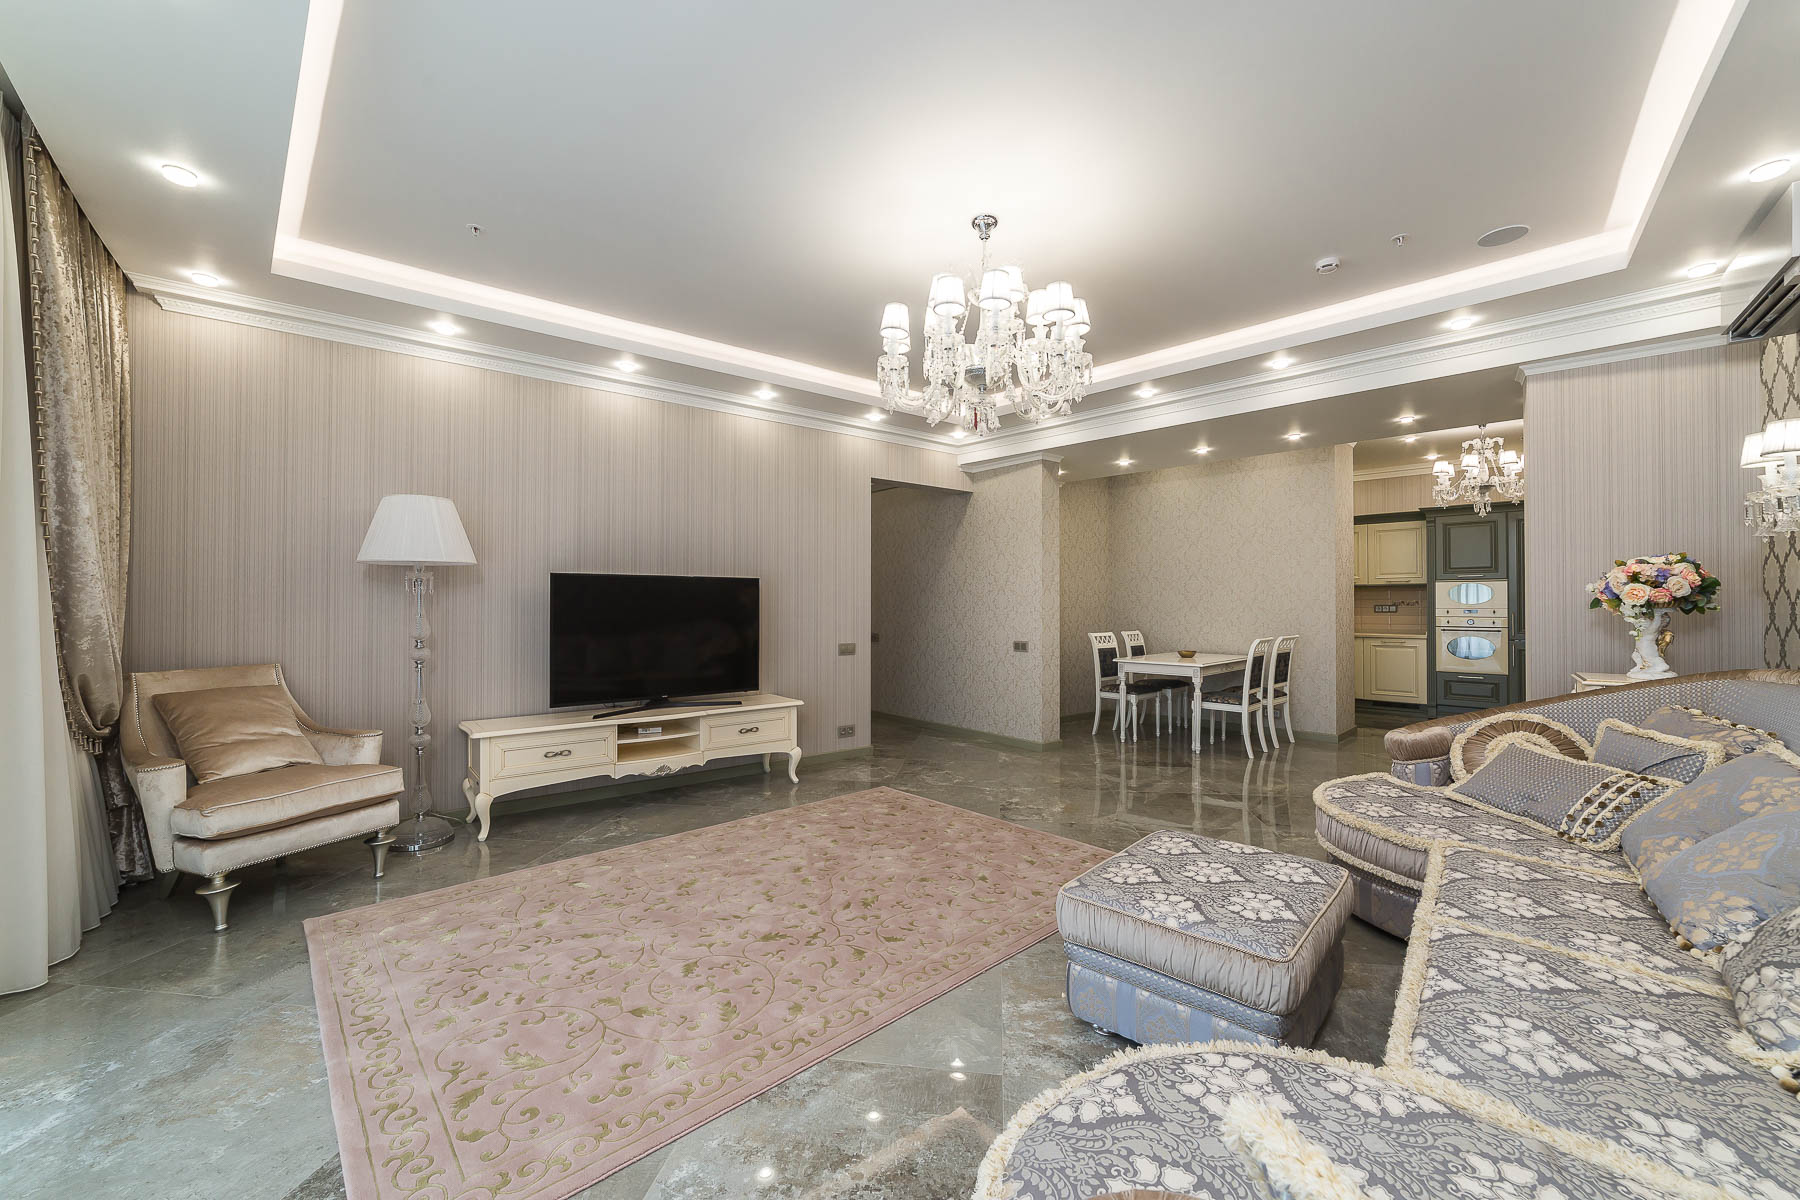 Продам - Жилой комплекс "Барселона Парк", новая квартира, площадью в 117 м2, расположенная на 5 этаже. -пр.Курортный  - цена: 35000000